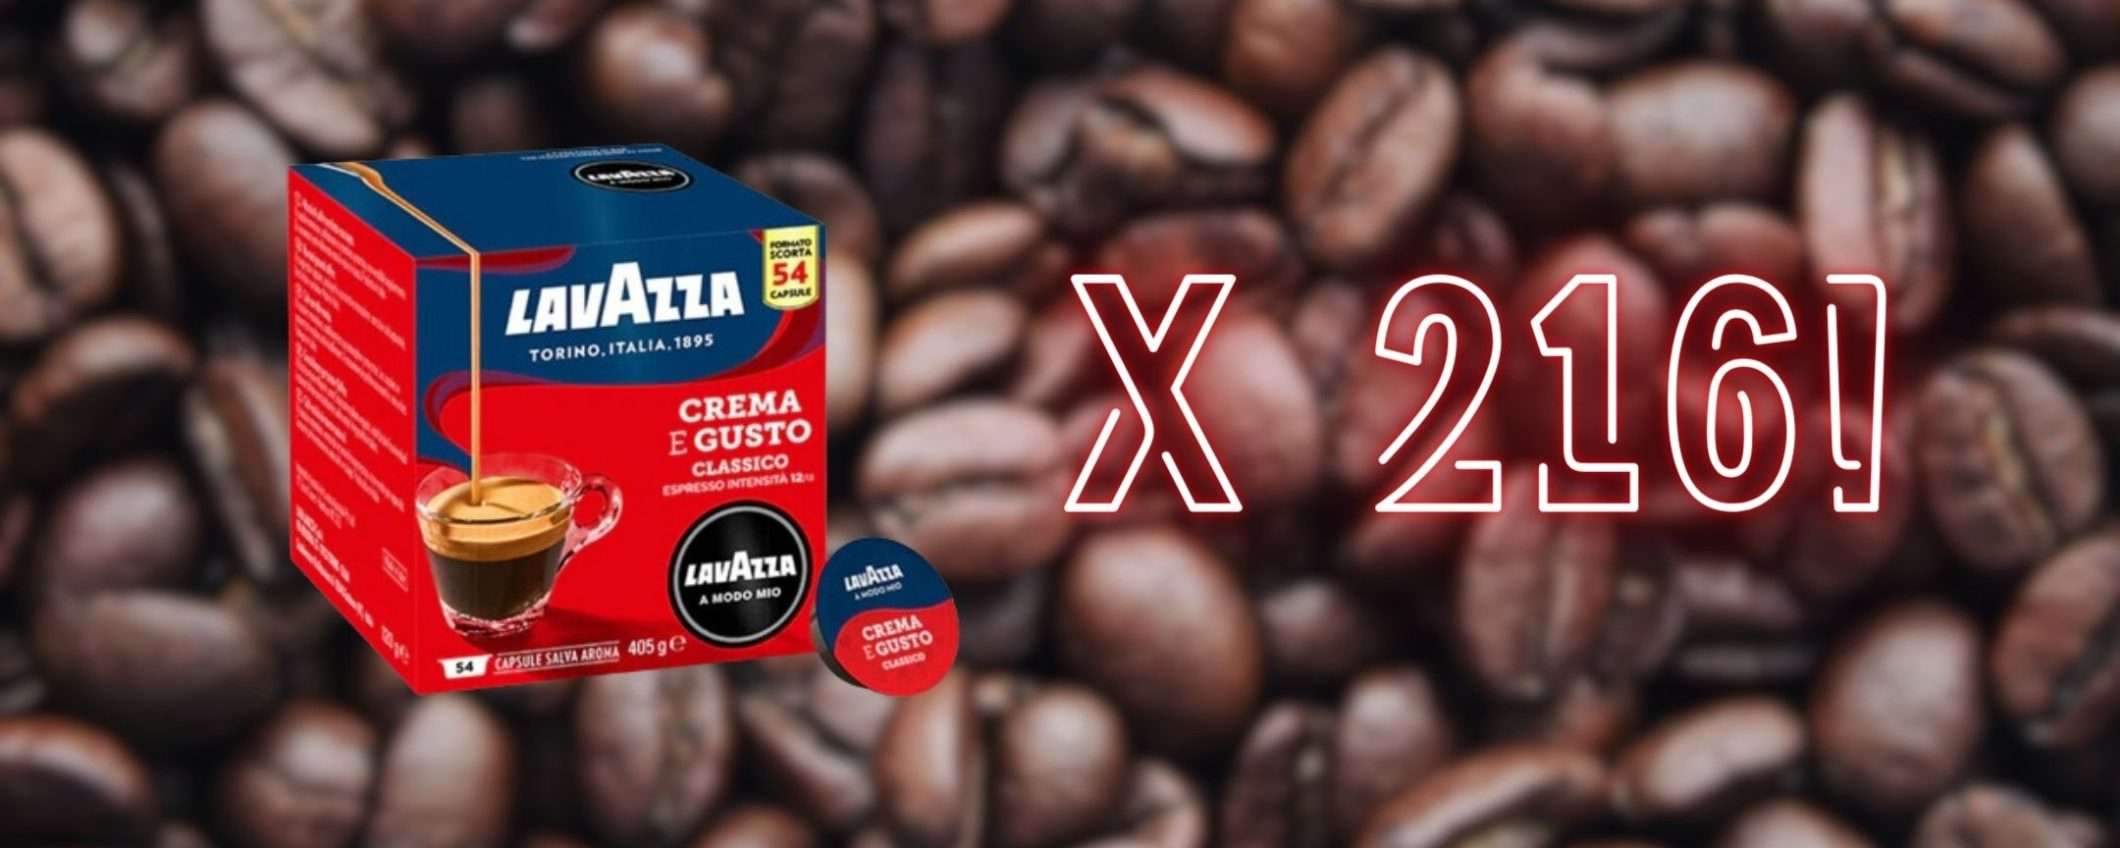 Caffè Lavazza Crema e Gusto: 216 capsule per A Modo Mio a soli 39€ su eBay